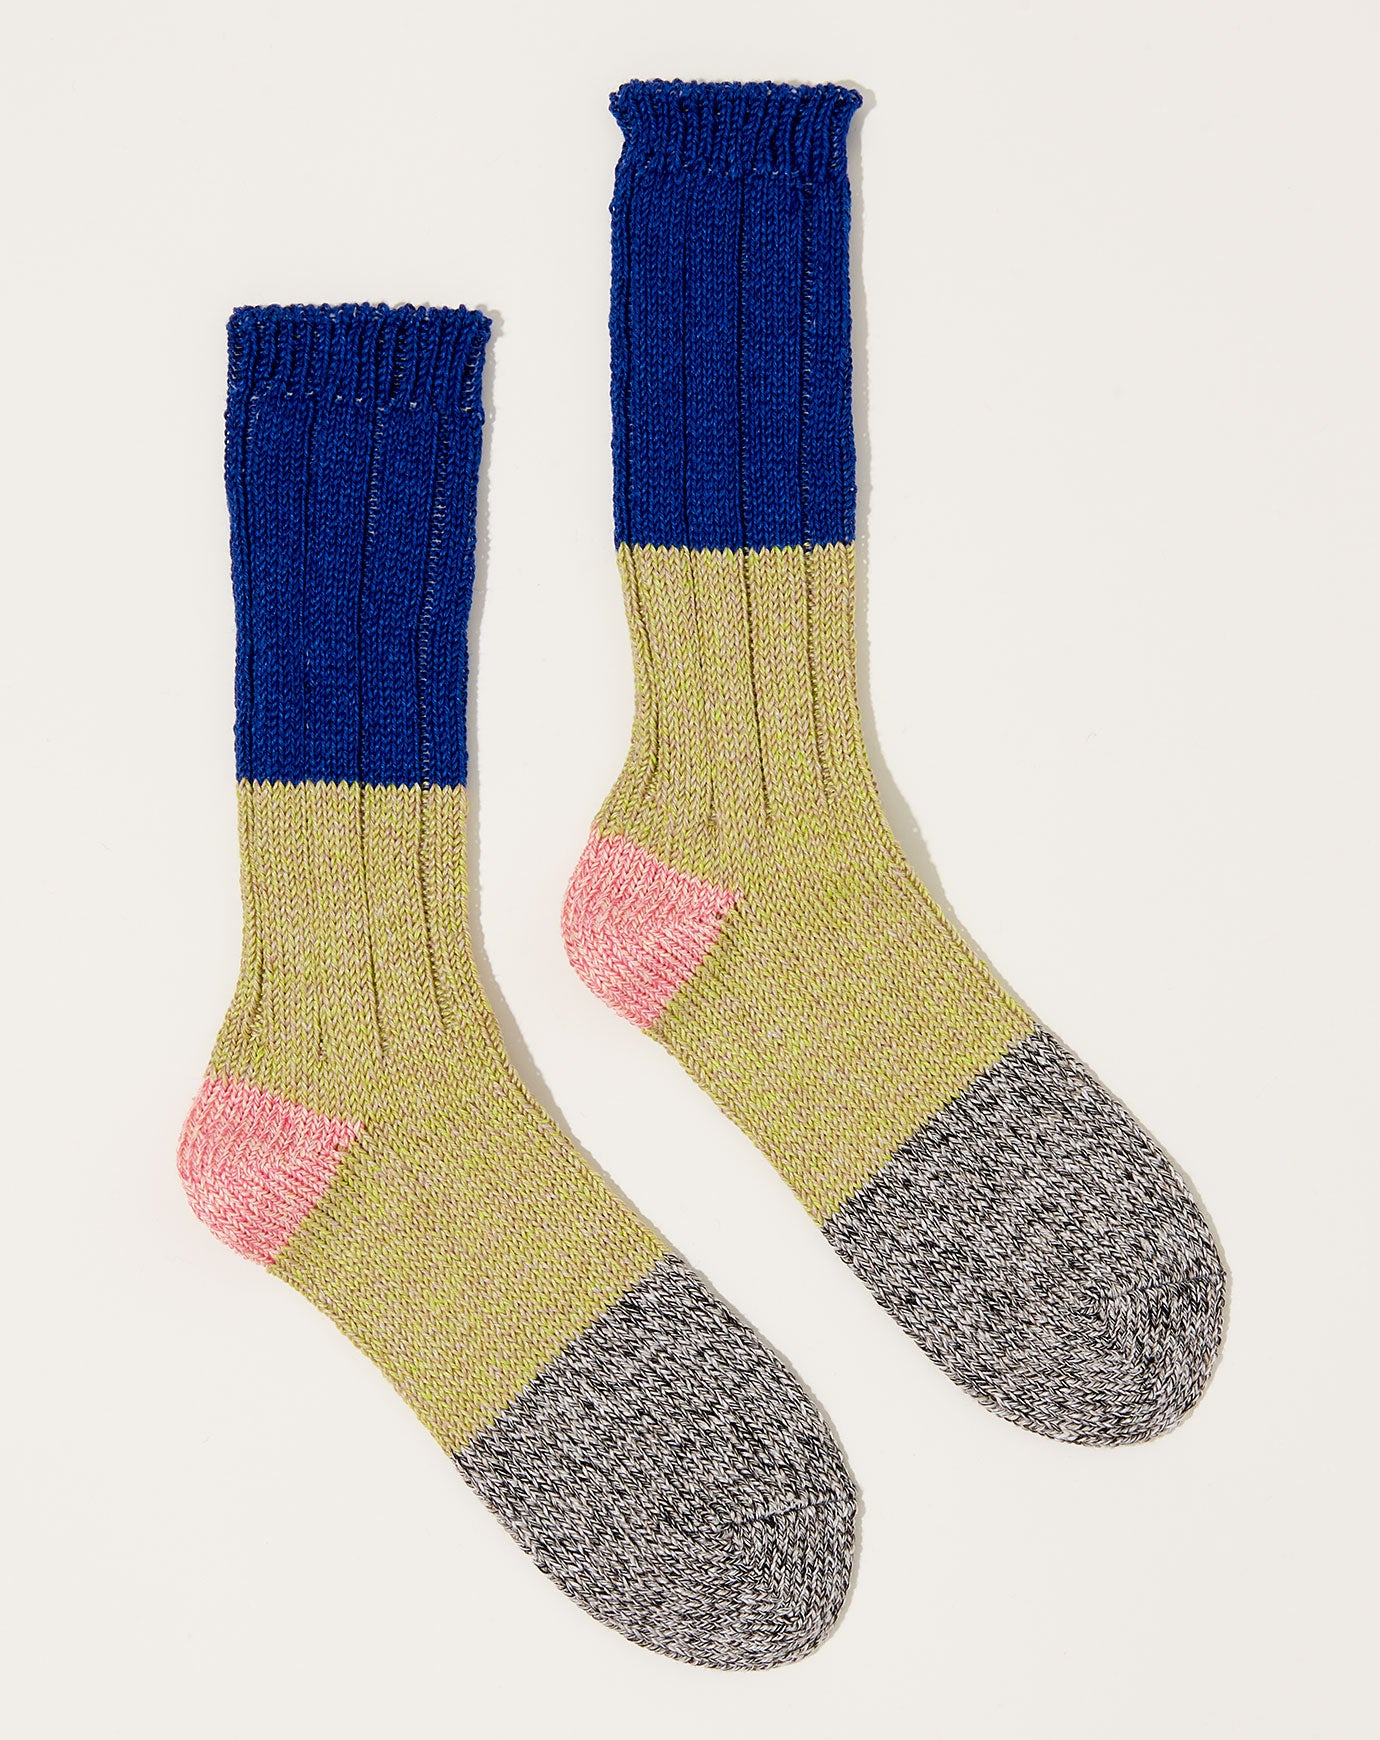 Kapital 56 Yarns Linen Grandrelle Socks in Blue